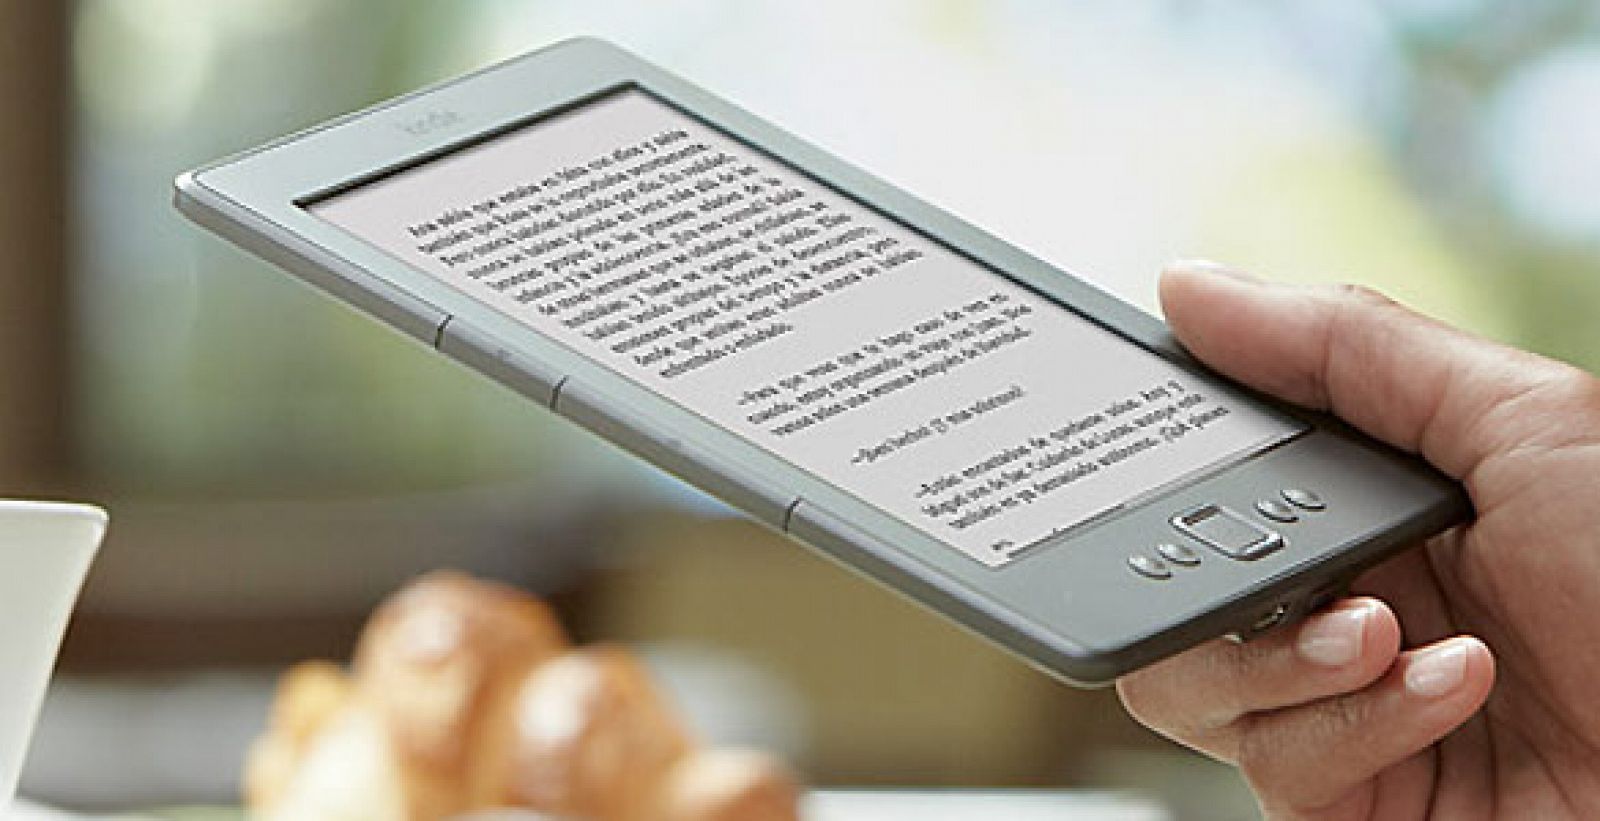 La compañía Amazon lanzó recientemente su lector de e-books en España